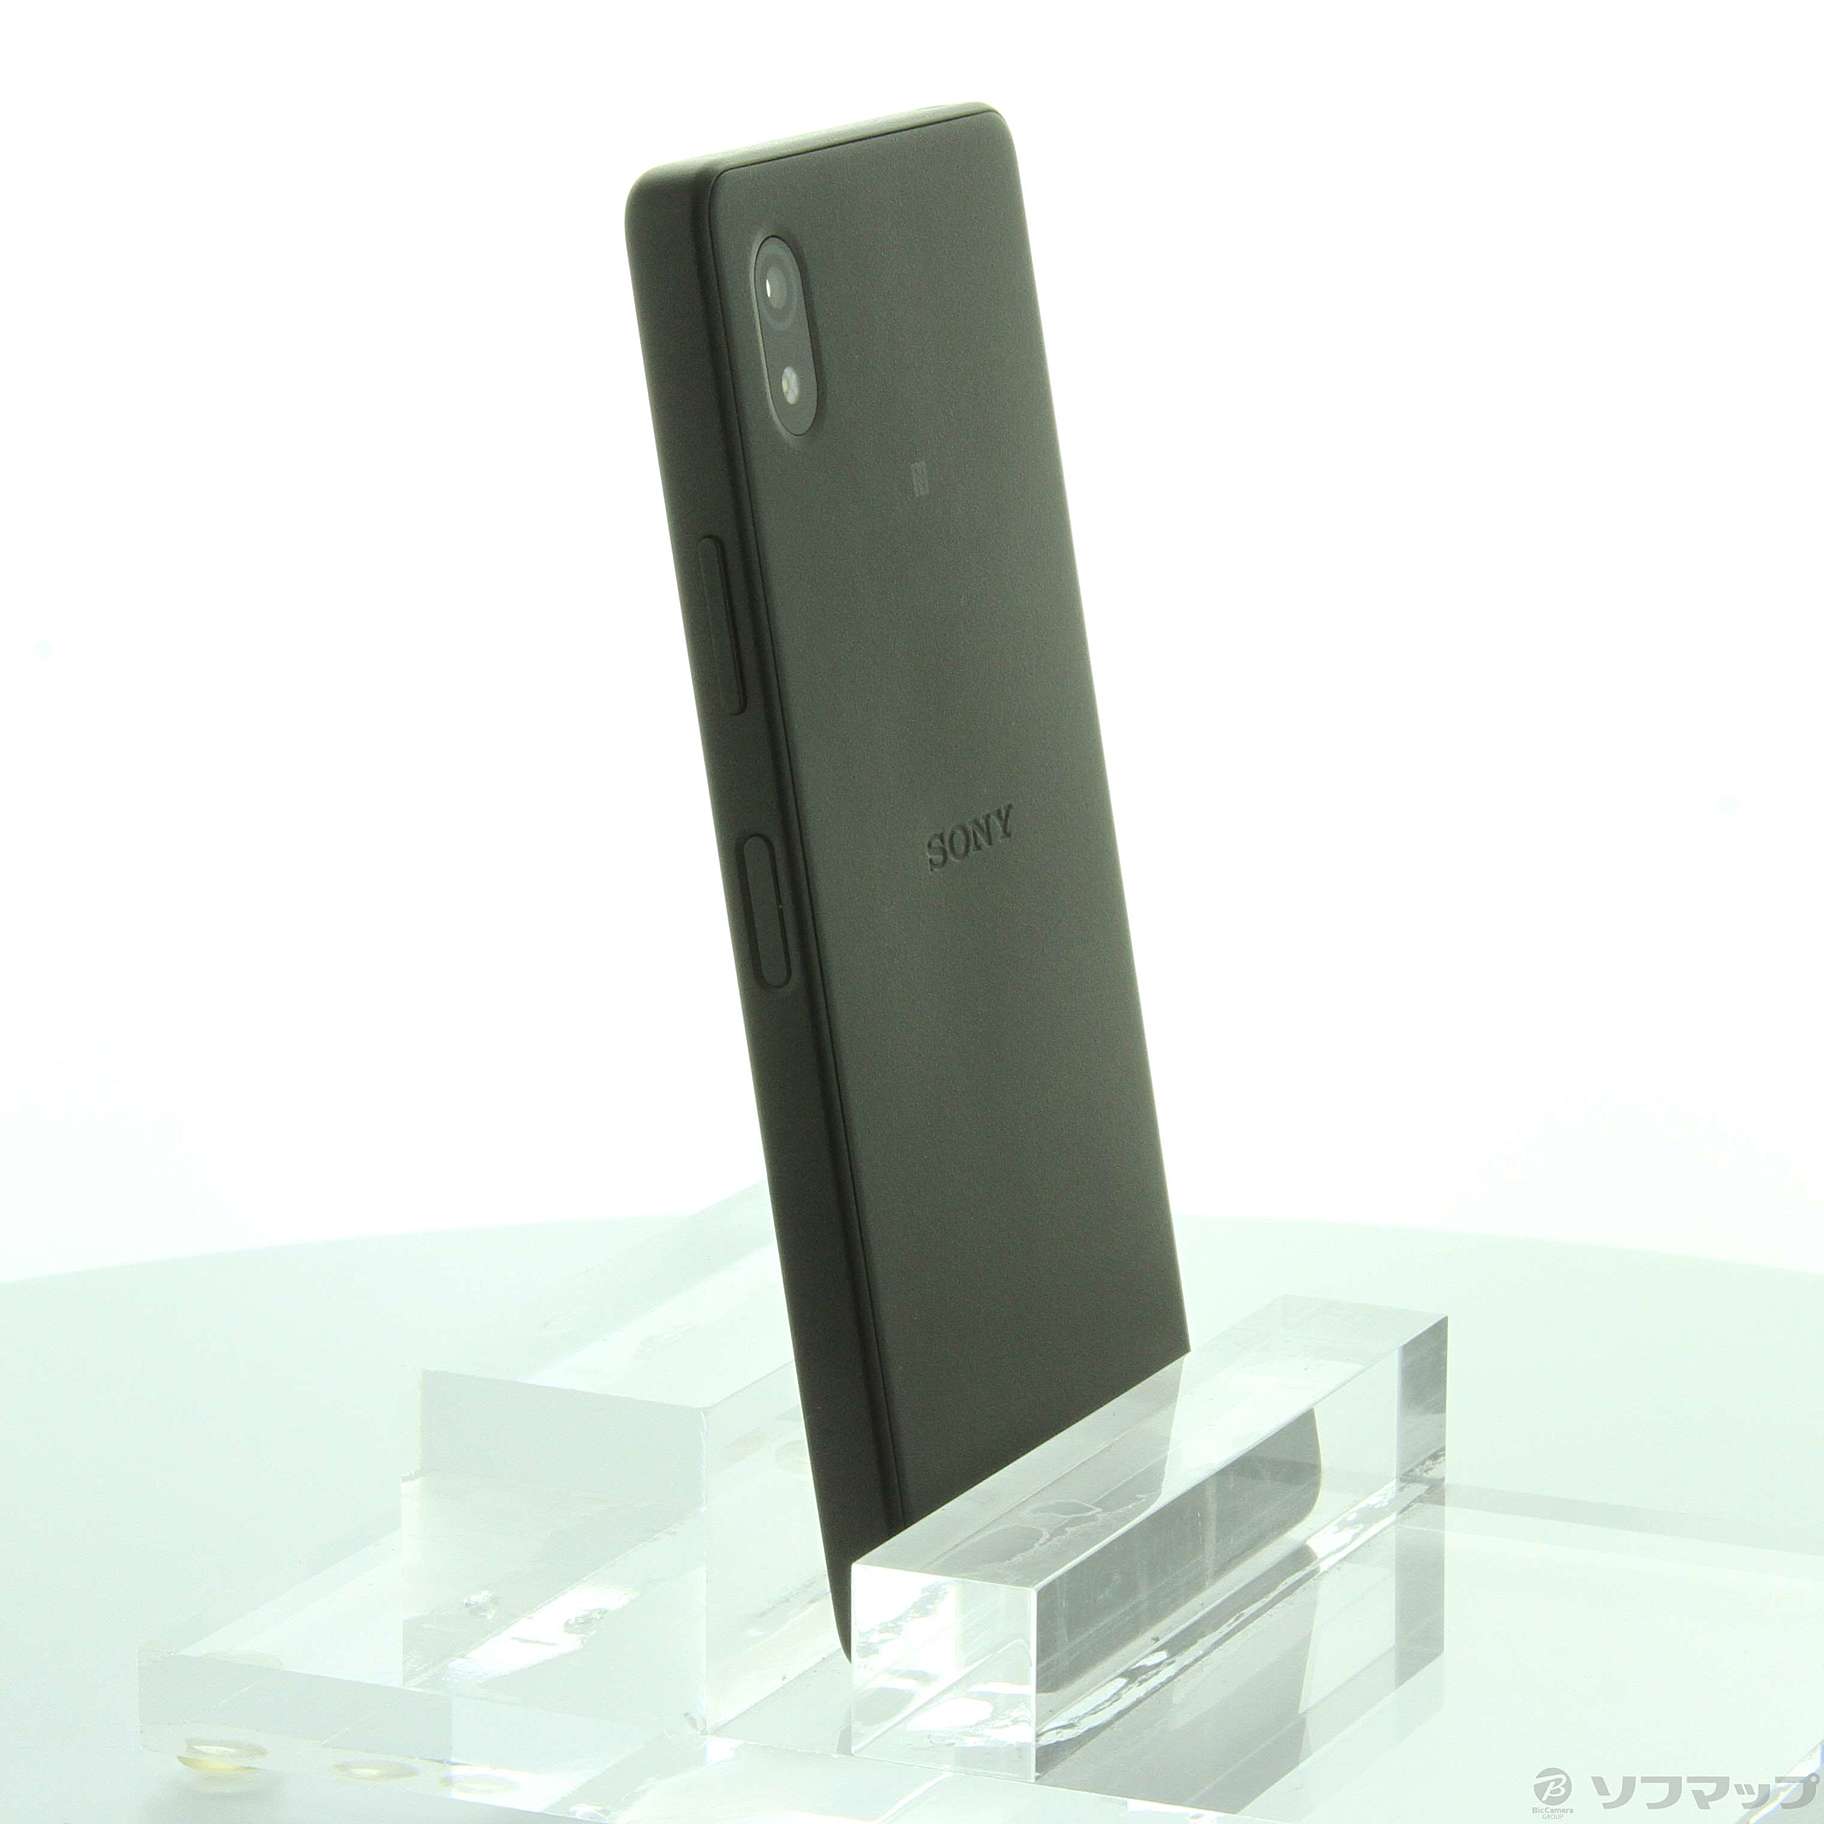 Xperia Ace Ⅲ ブラック 64GB ワイモバイル 2個セット